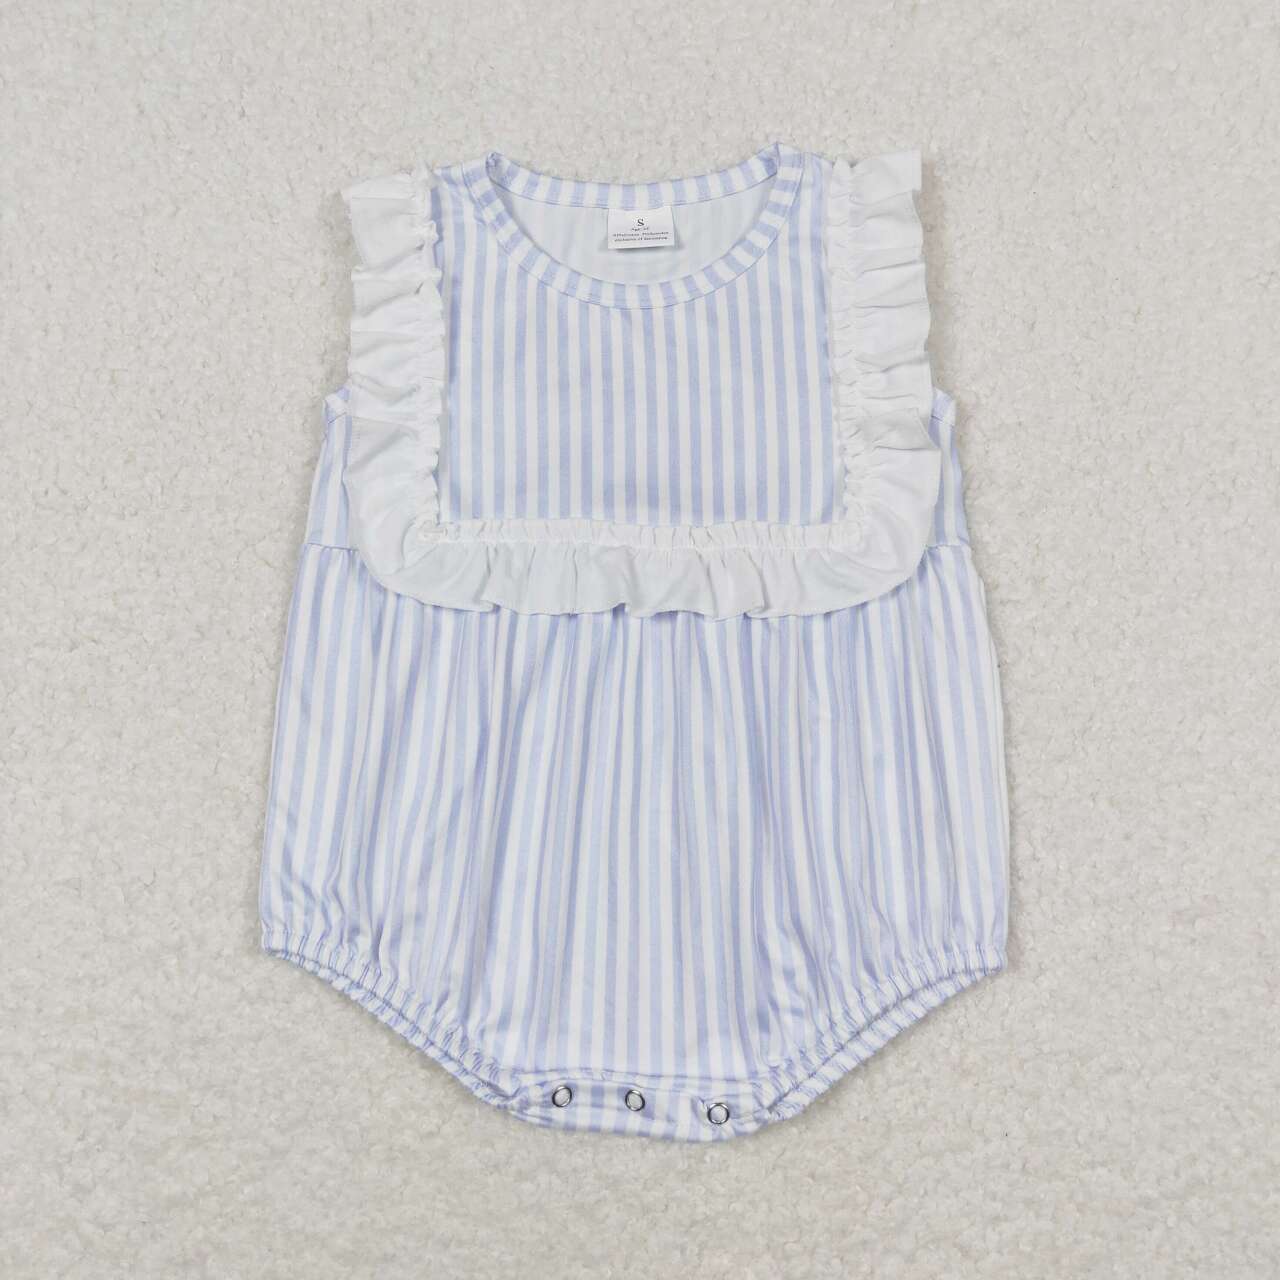 SR1363  Blue Stripes Print Baby Girls Summer Romper